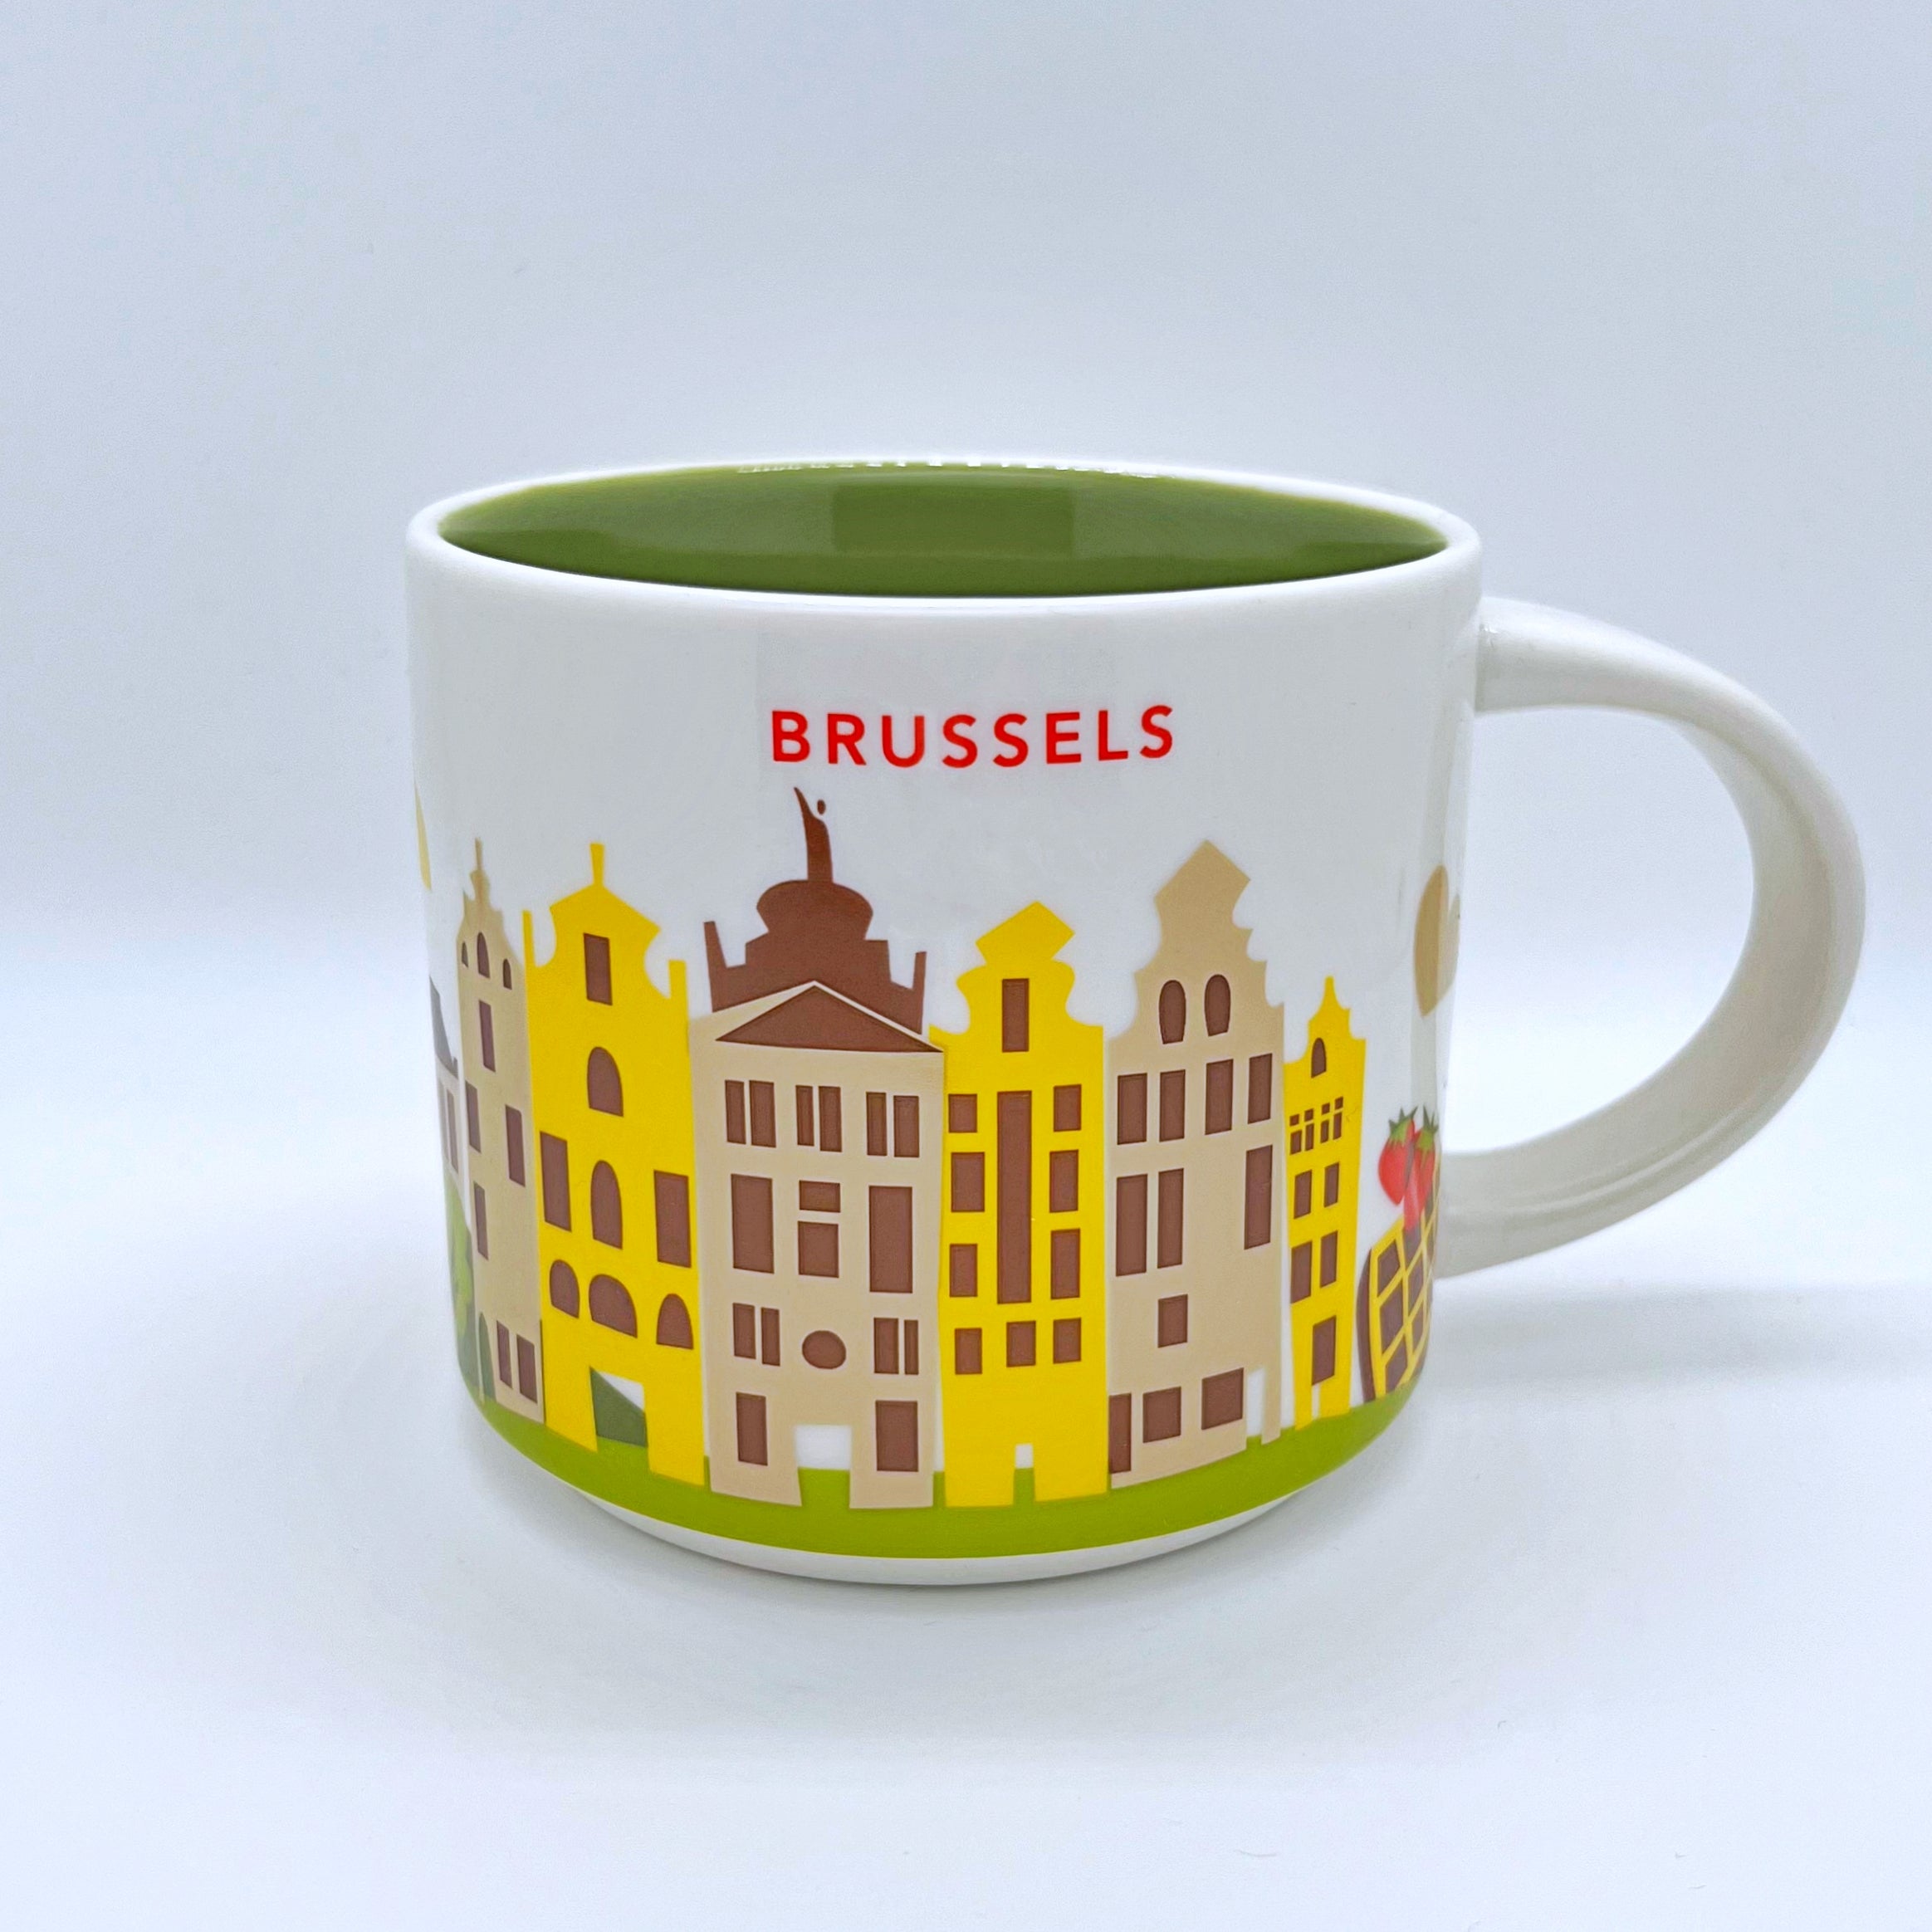 Kaffee Tee und Cappuccino Tasse von Starbucks mit gemalten Bildern aus der Stadt Brüssel